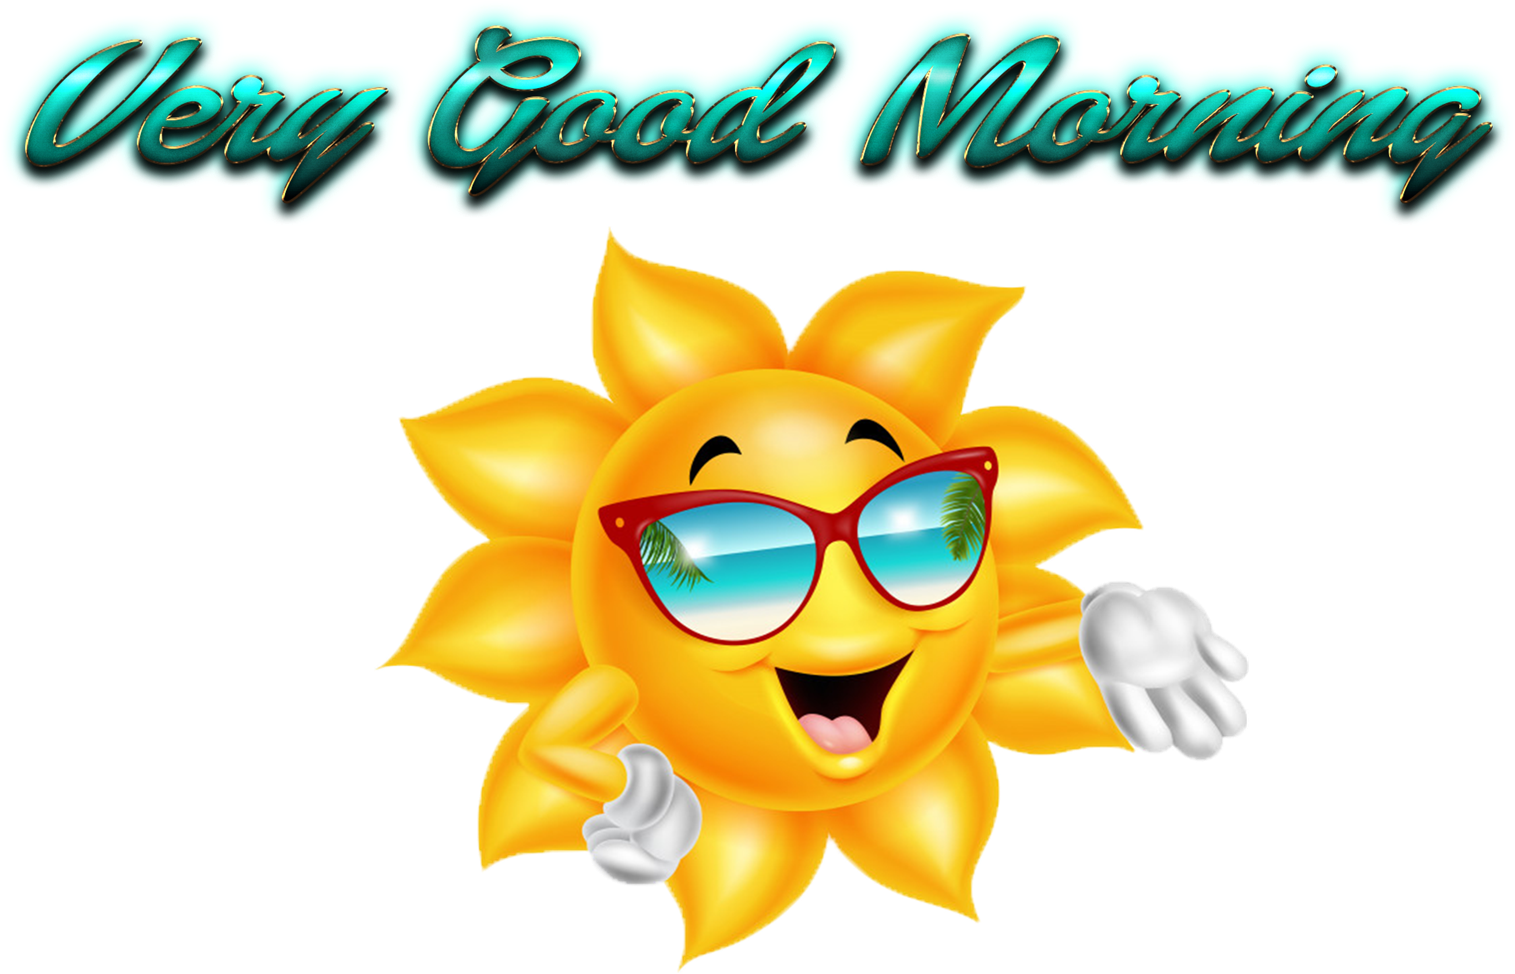 A Cartoon Sun Wearing Sunglasses